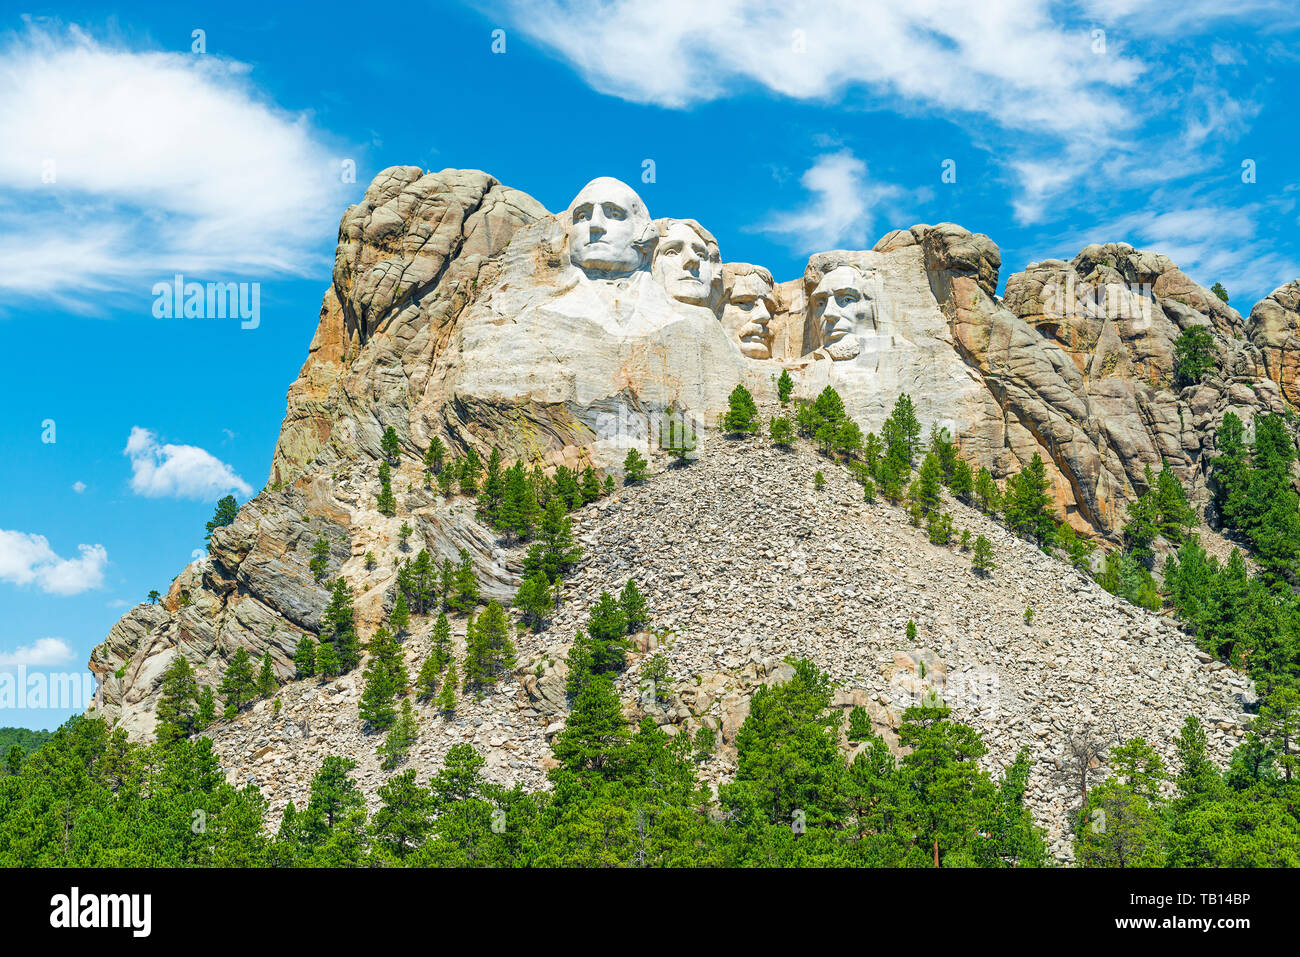 Mount Rushmore National Monument mit einem Pinienwald in den Black Hills in der Nähe von Rapid City in South Dakota, Vereinigte Staaten von Amerika, USA. Stockfoto